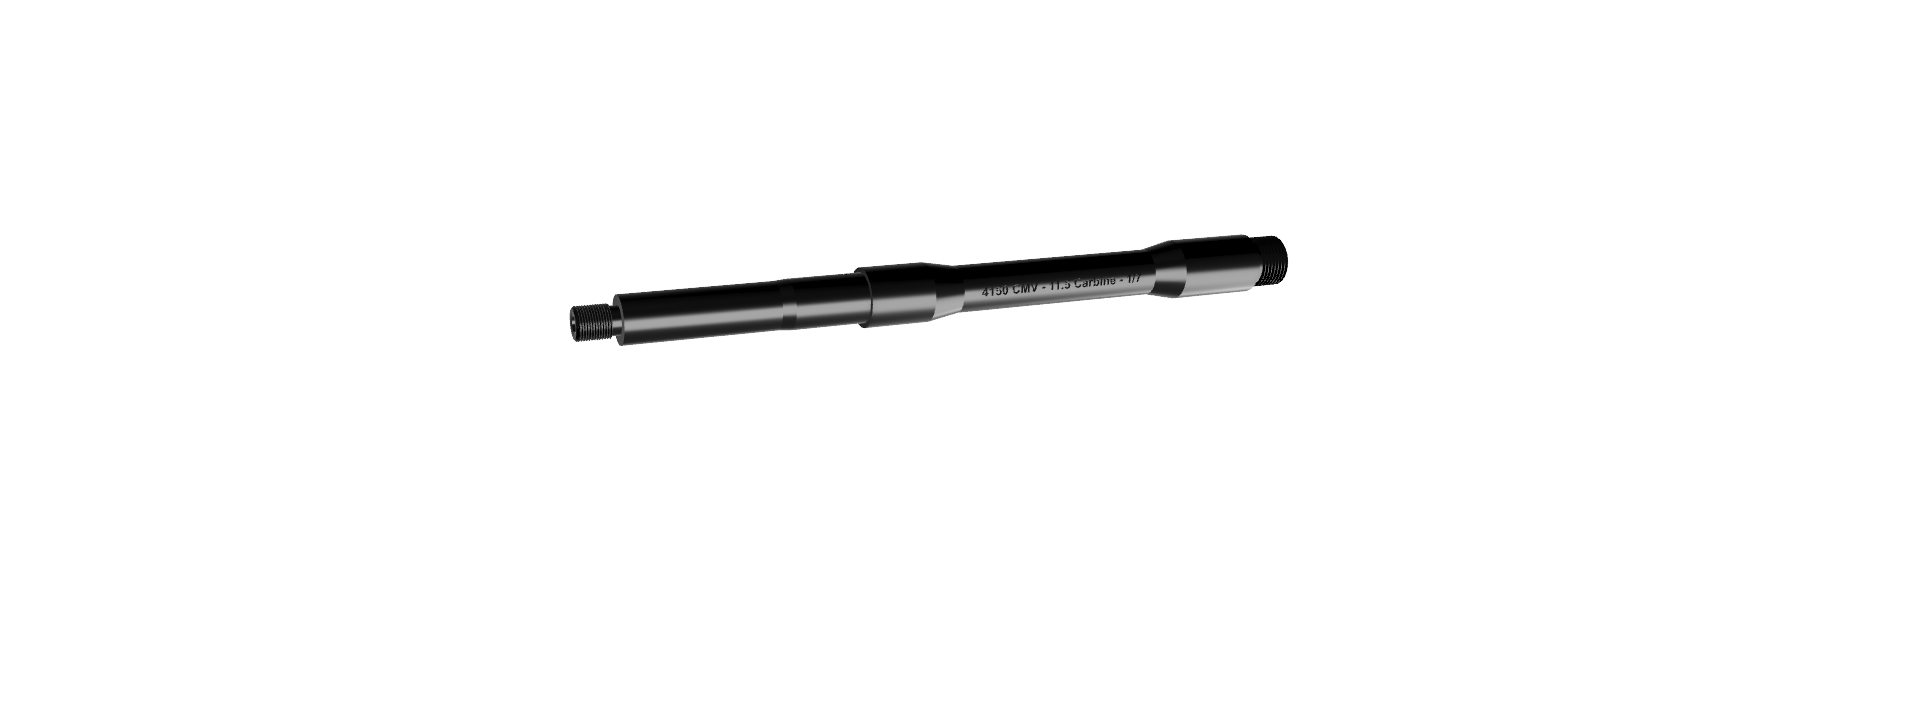 12.5" 5.56 USGI Profile Carbine AR 15 Barrel - Hughes Ballistics